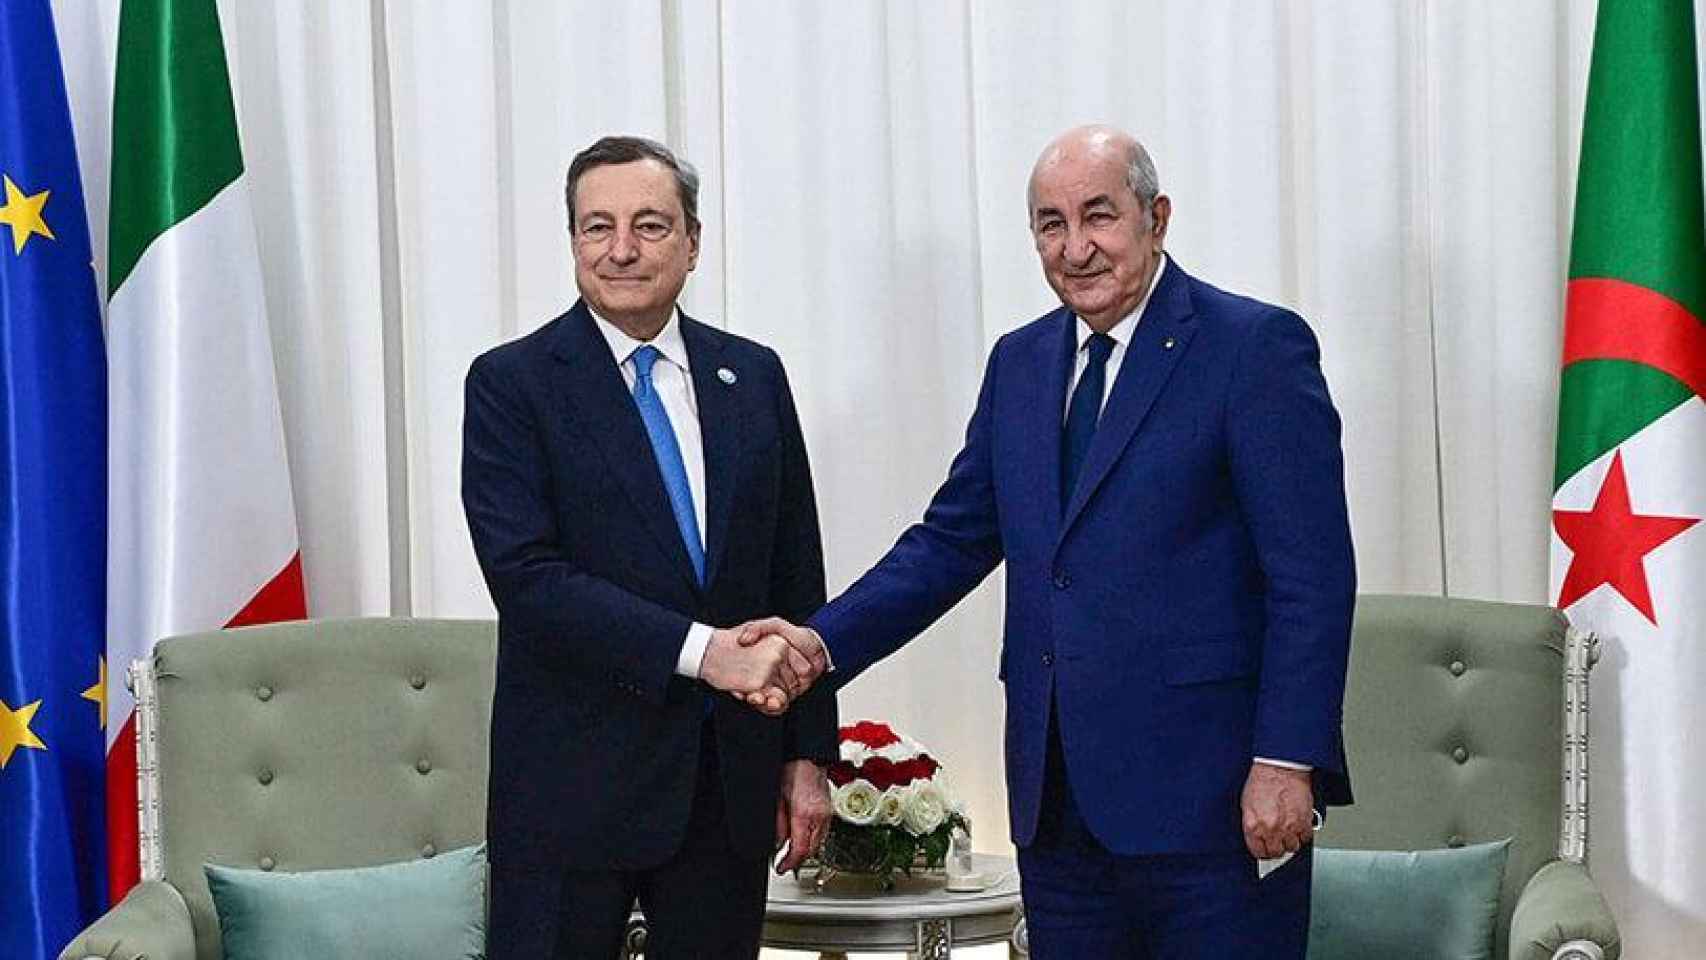 El primer ministro italiano, Mario Draghi, junto con el presidente de Argelia, Abdelmadjid Tebboune, el pasado 11 de abril en Argel.